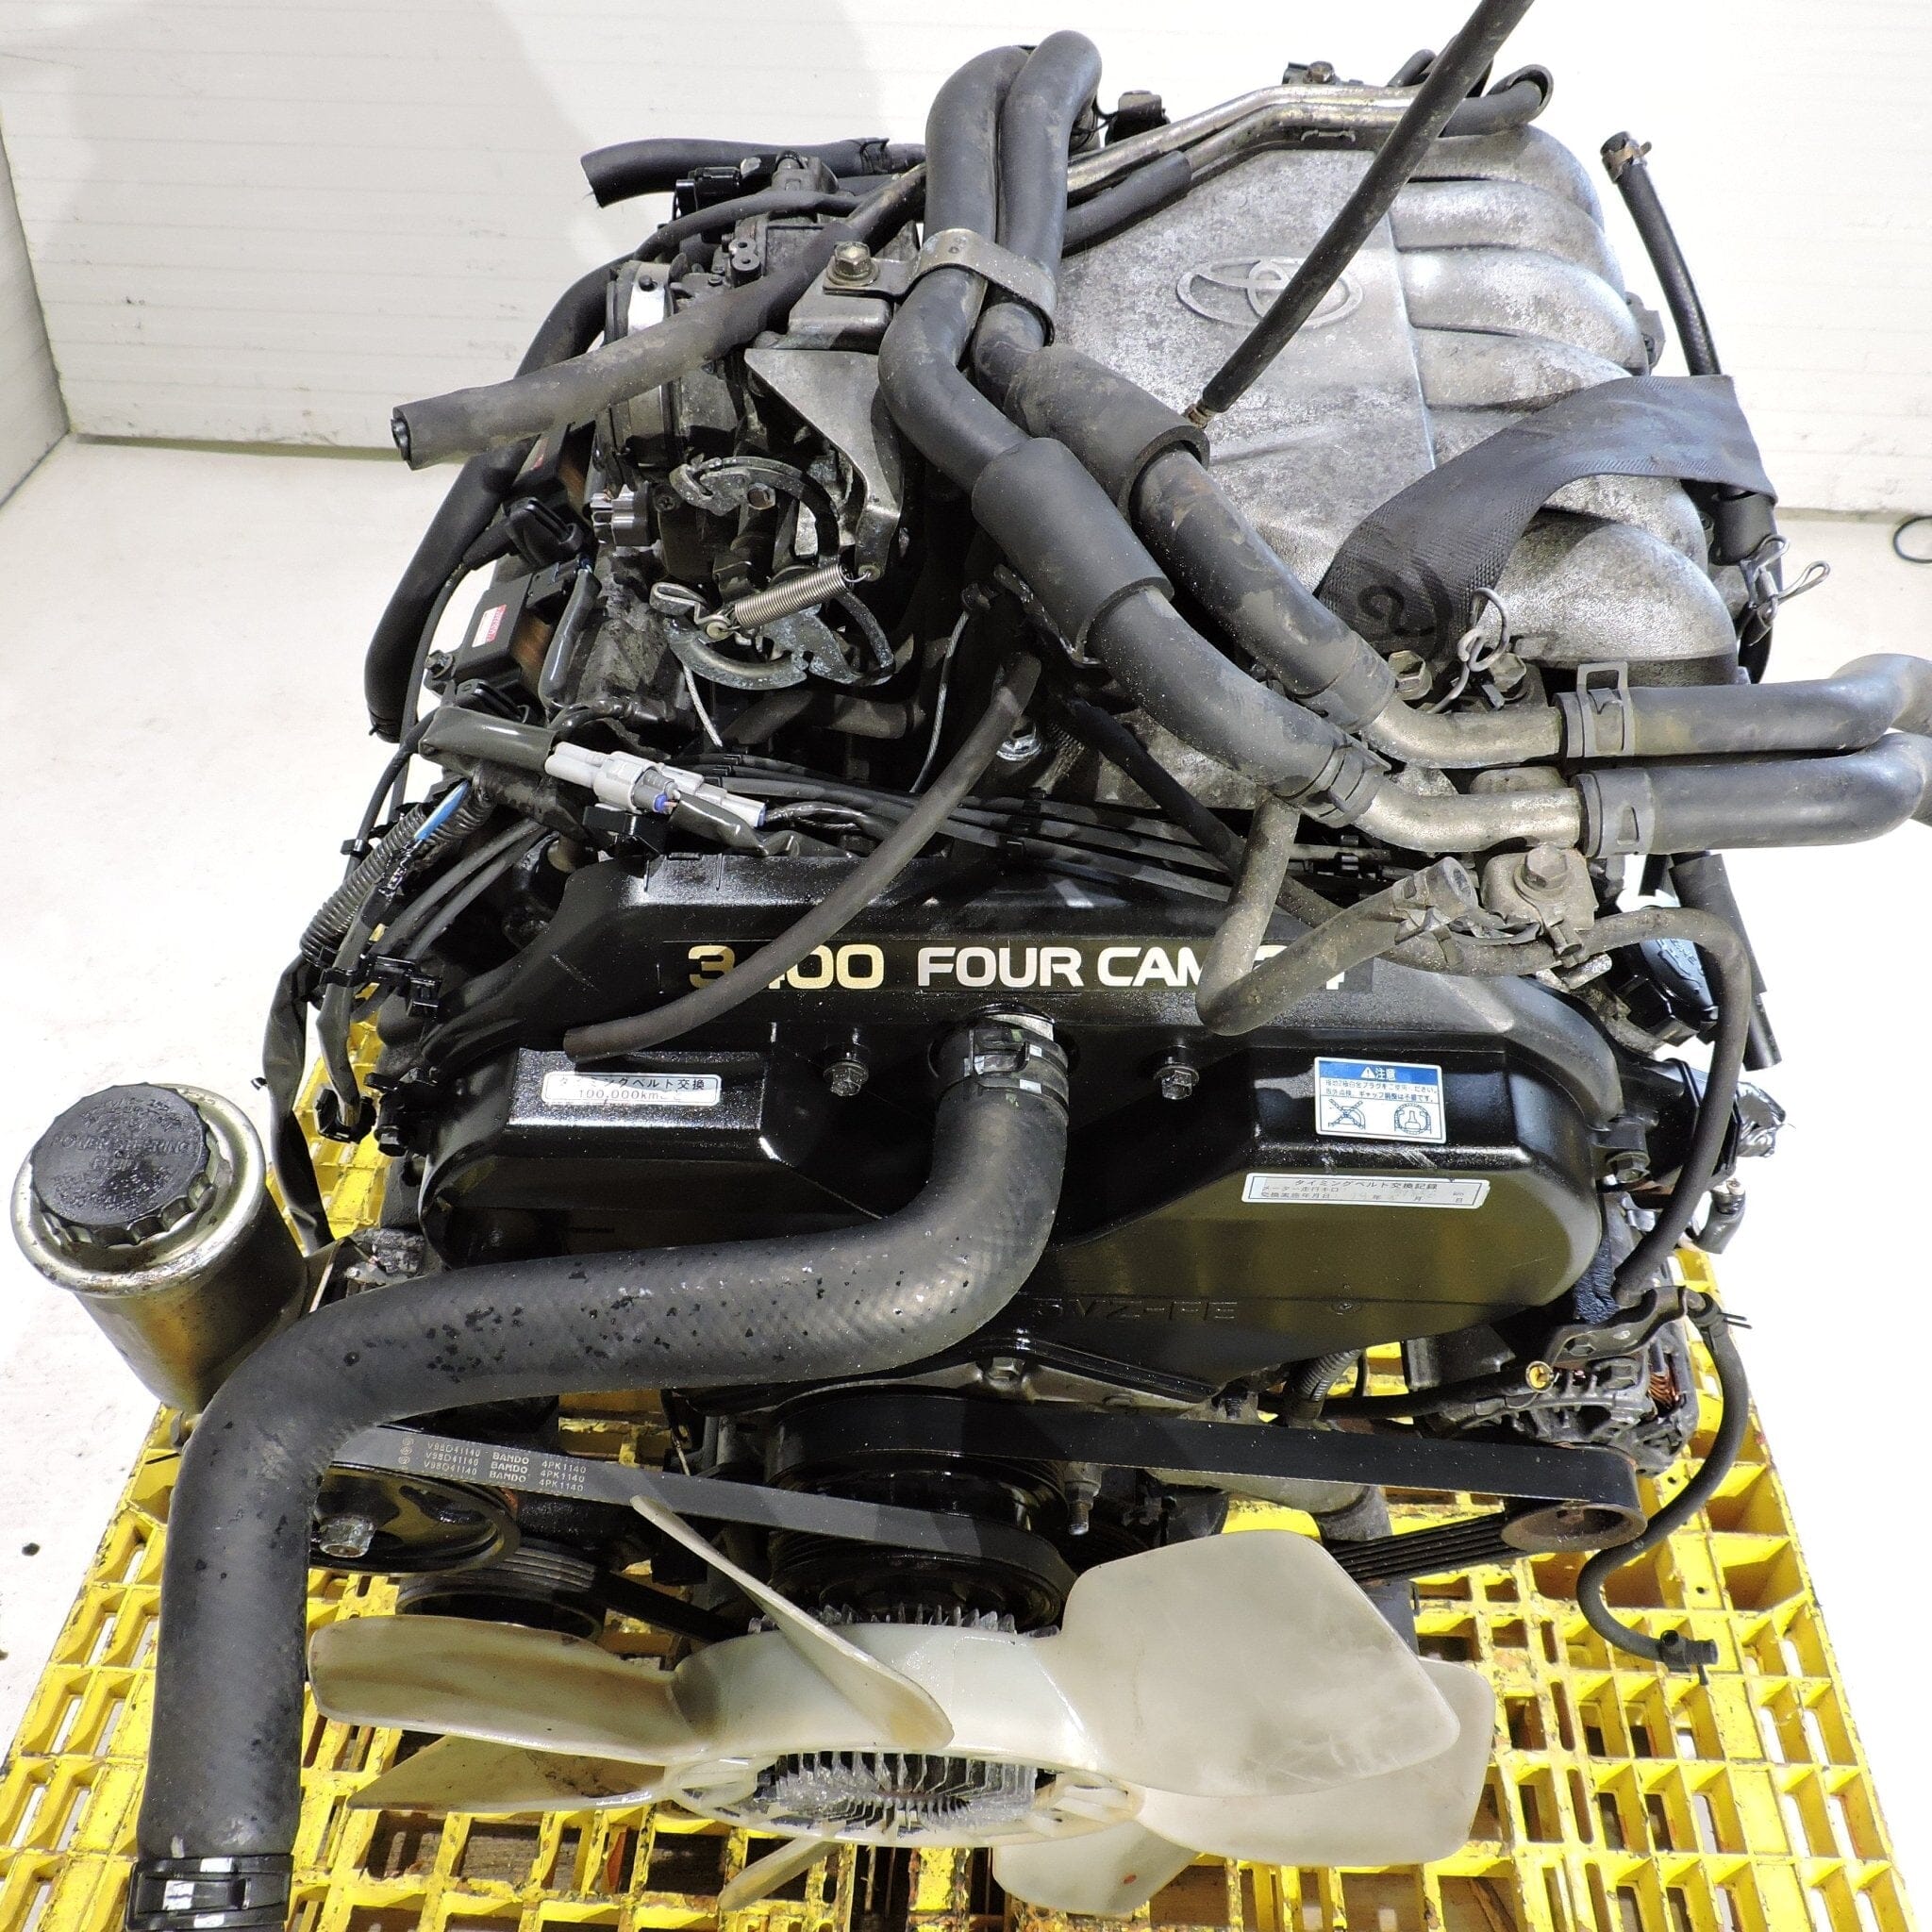 Toyota 4runner 1996-2002 3.4L JDM Engine - 5VZ-FE 6-Cylinder